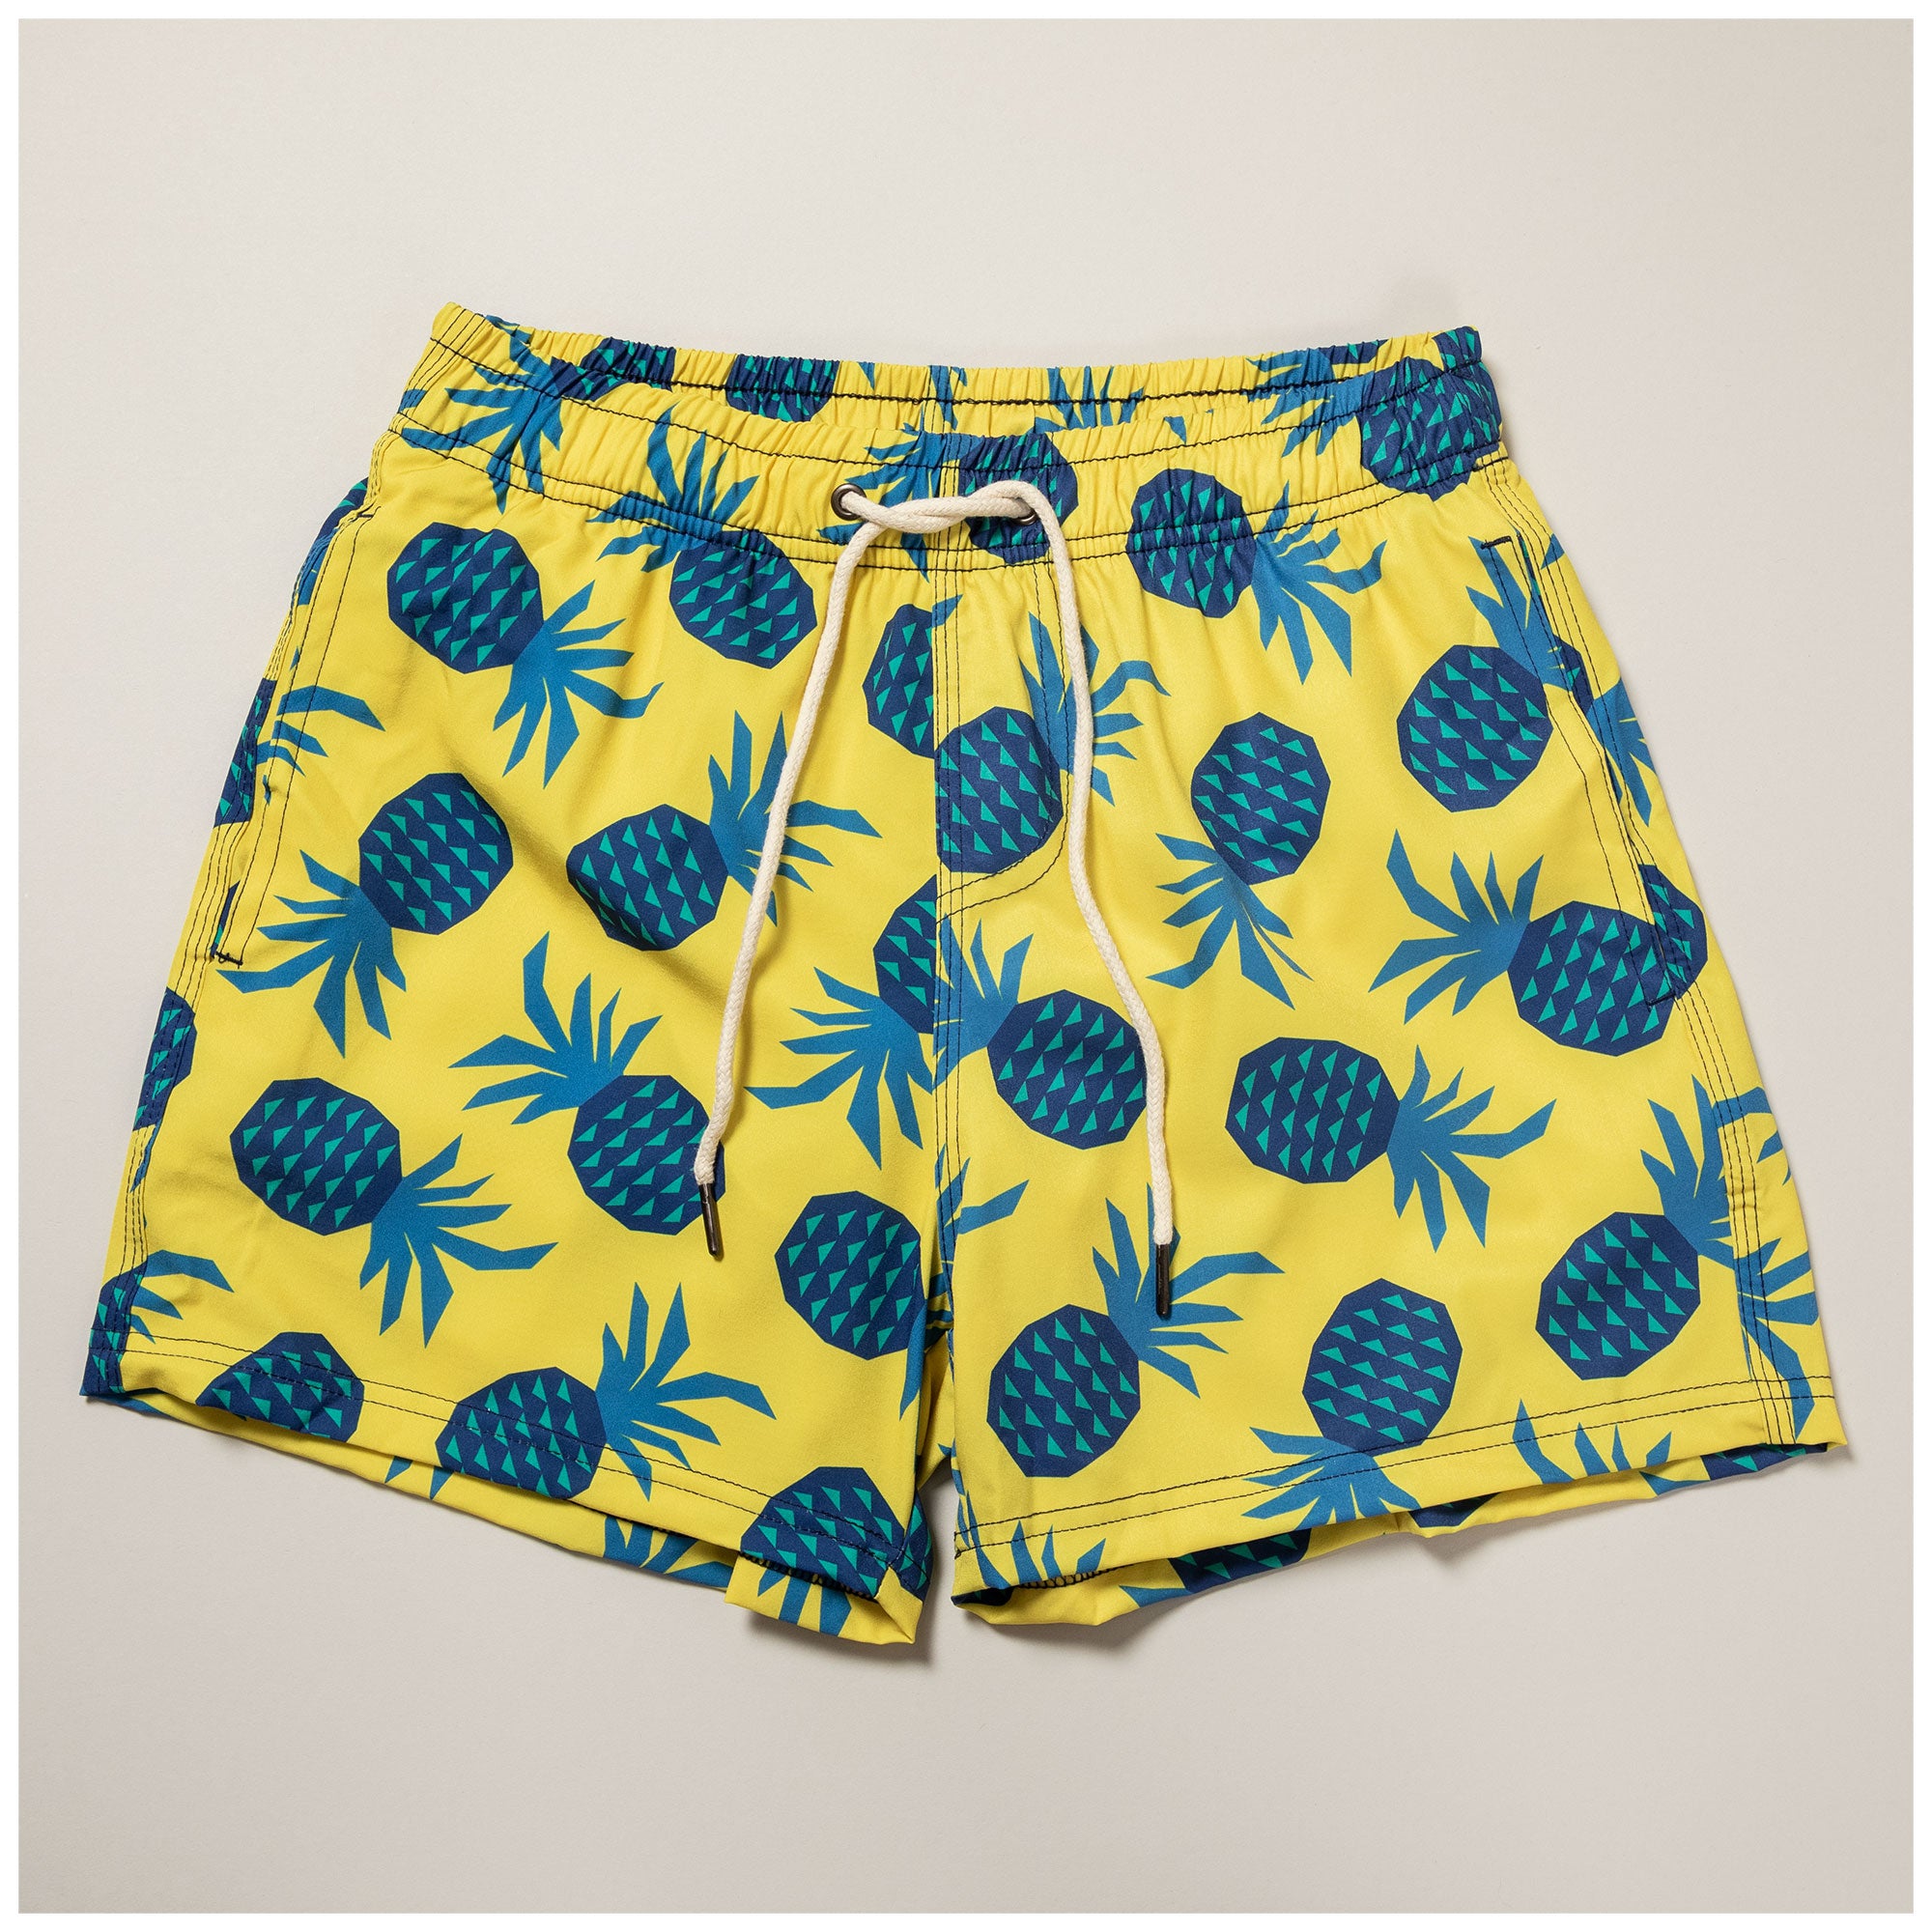 Two Left Feet® Men’s Swim Trunks - Well Pineapple - XL